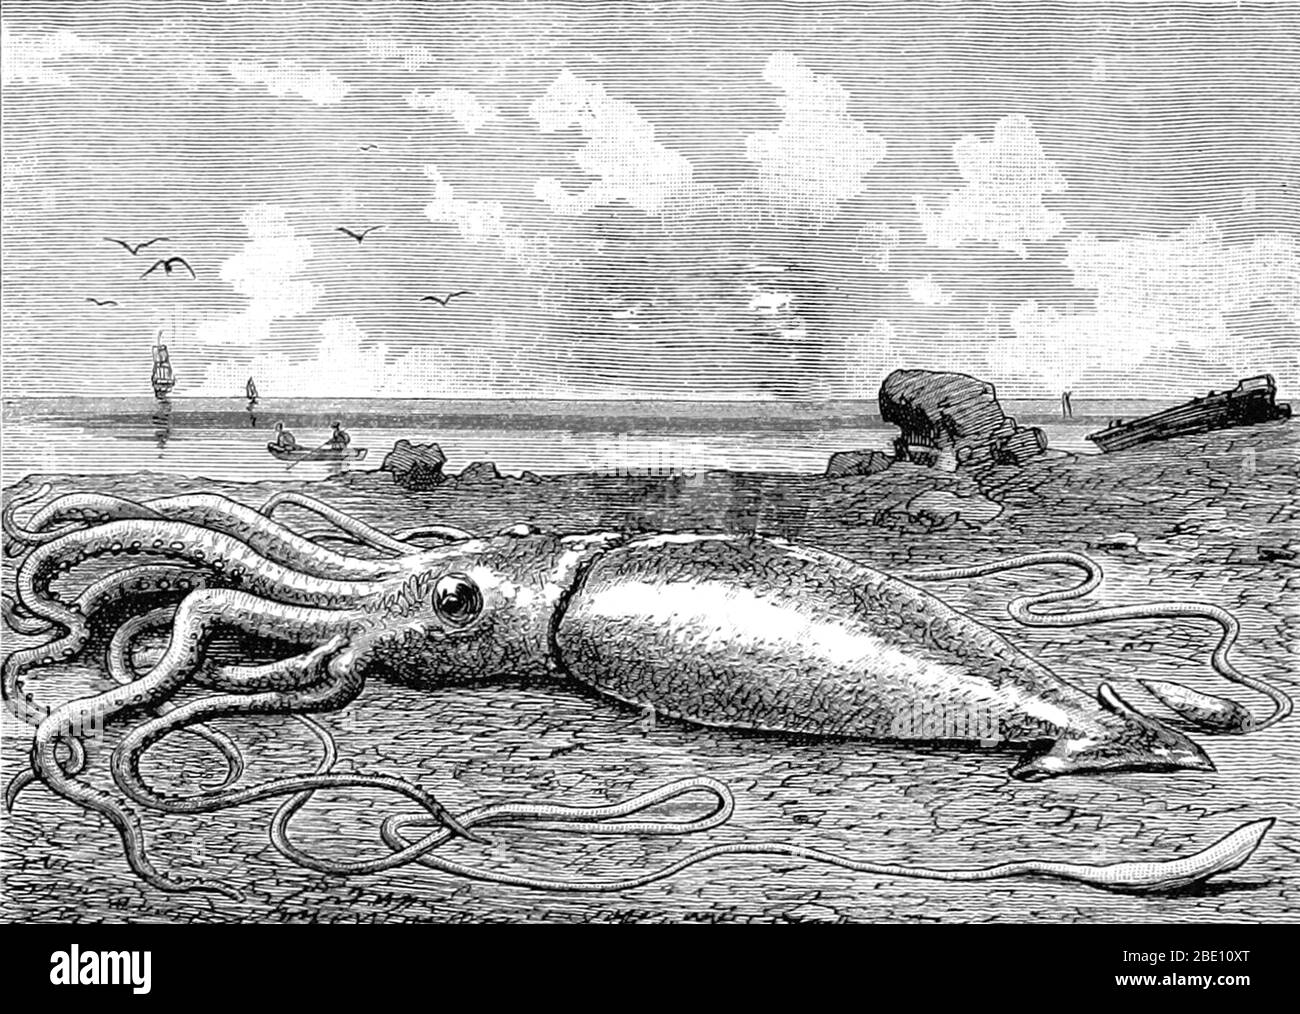 El calamar gigante (género Architeuthis) es un calamar de la familia Architeuthidae que habita en las profundidades del océano. El calamar gigante puede crecer a un tamaño tremendo debido al gigantismo de las profundidades marinas: Según estimaciones recientes, el tamaño máximo es de 43 pies para las hembras y 33 pies para los machos, desde las aletas posteriores hasta la punta de los dos tentáculos largos. El manto mide unos 6.6 pies de largo (más para las hembras, menos para los machos), y la longitud del calamar excluyendo sus tentáculos (pero incluyendo la cabeza y los brazos) rara vez excede los 16 pies. Las reclamaciones de especímenes que miden 66 pies o más no han sido documentadas científicamente. Cuentos de calamares gigantes tienen Foto de stock